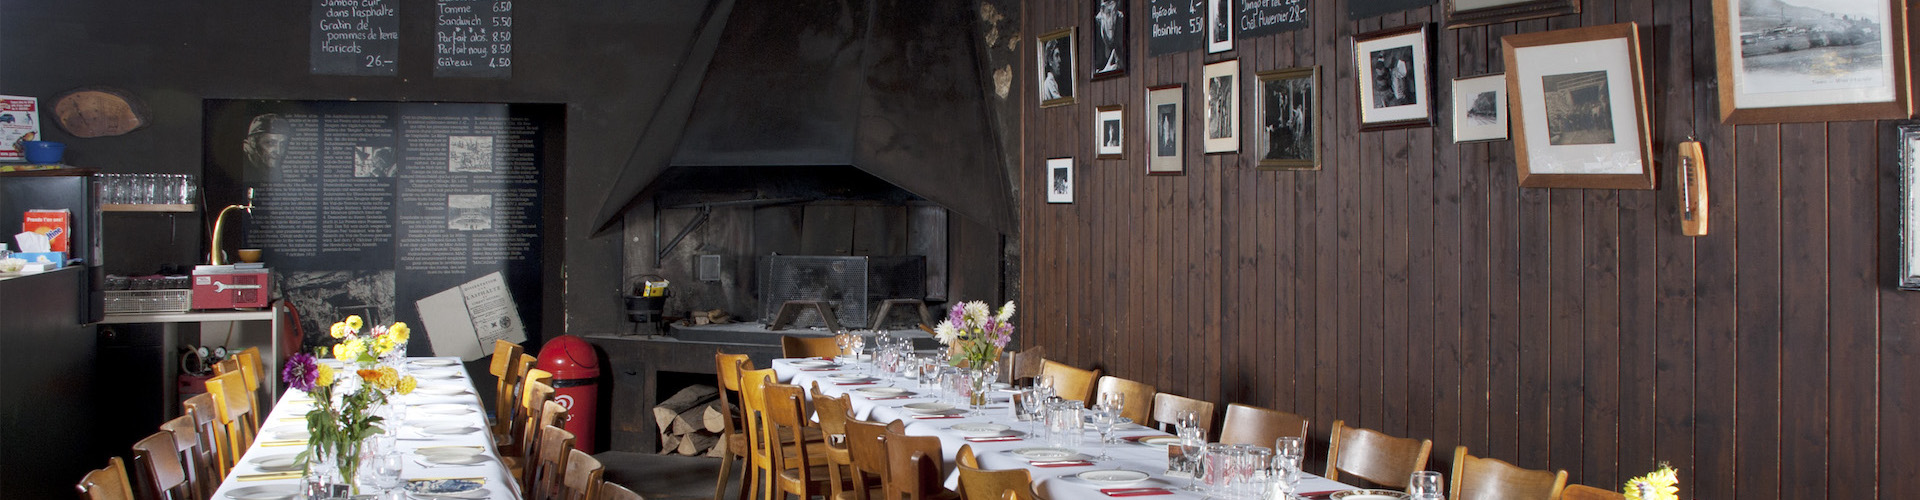 Das Restaurant «Café des Mines» der Asphaltminen von La Presta im Val-de-Travers, Neuenburg